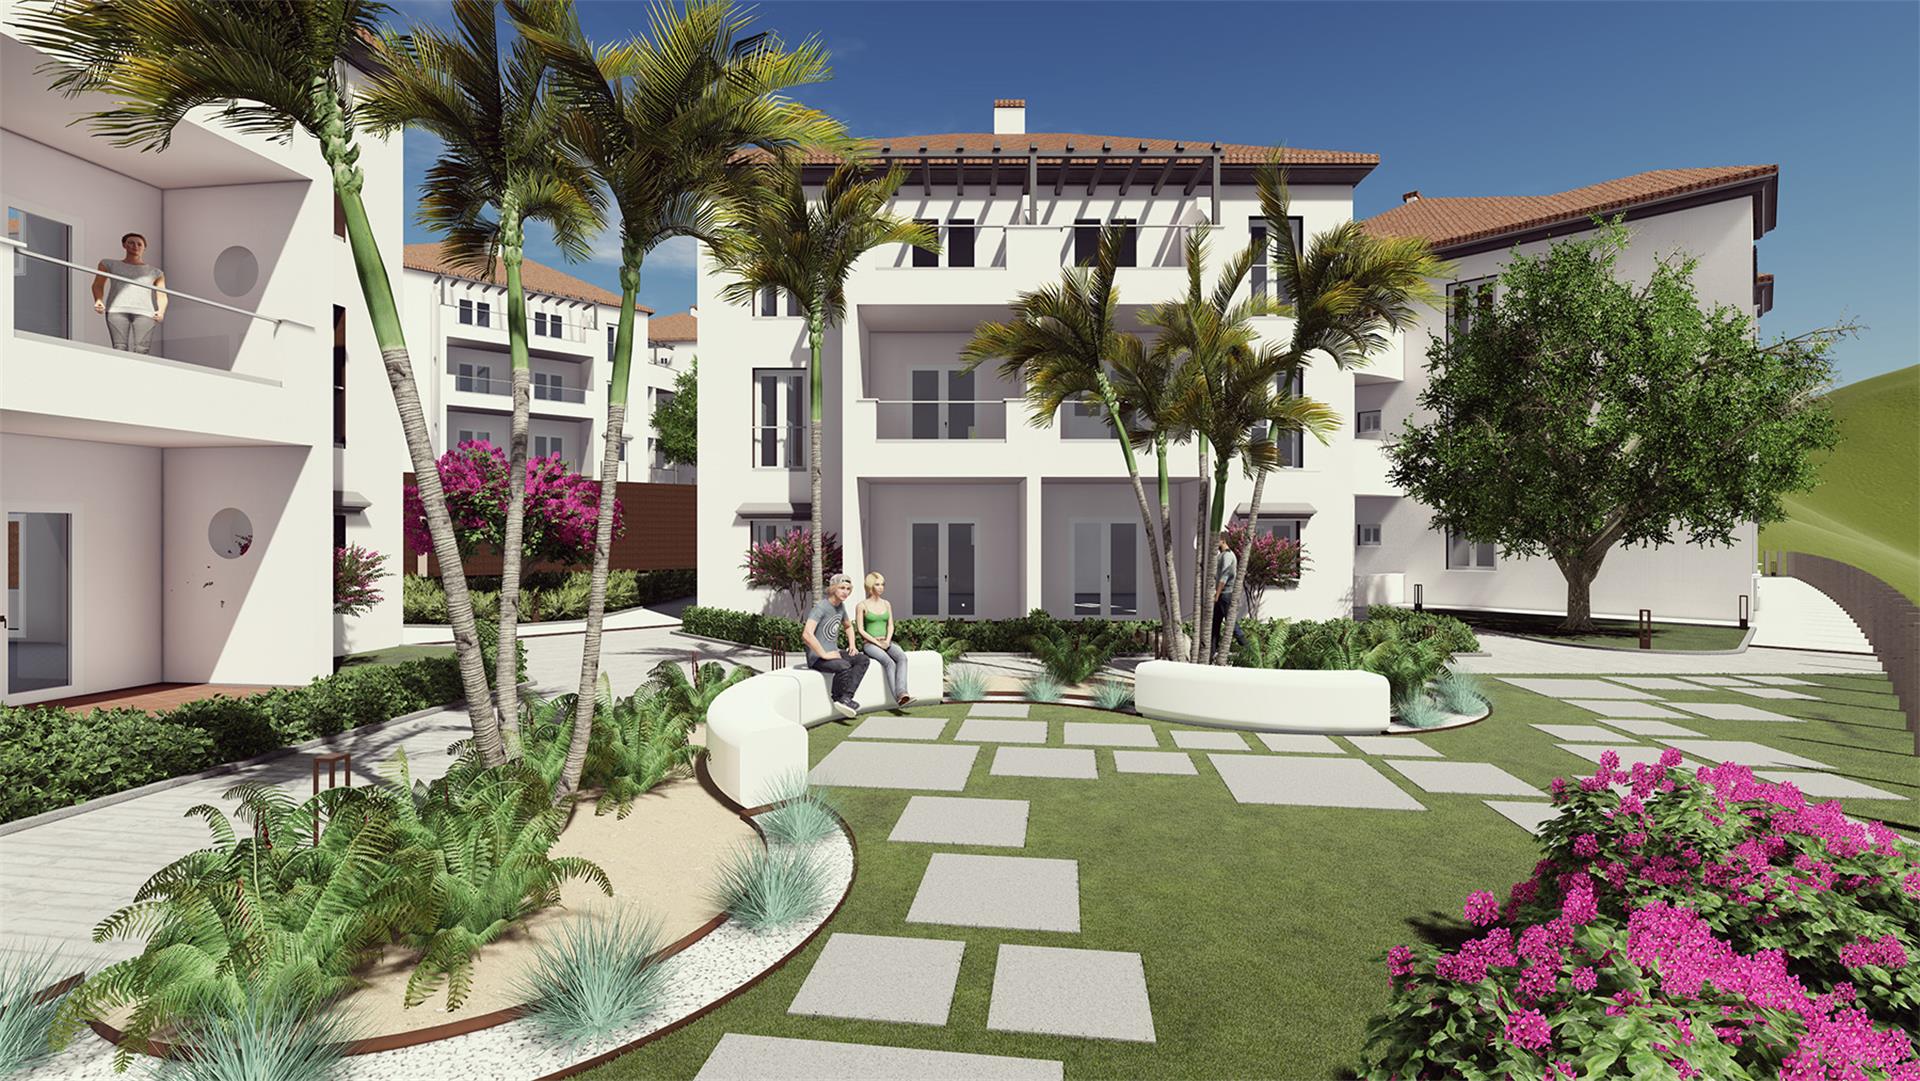 Apartamento de 2 dormitorios a estrenar en Costa del Sol al precio increíble - mibgroup.es